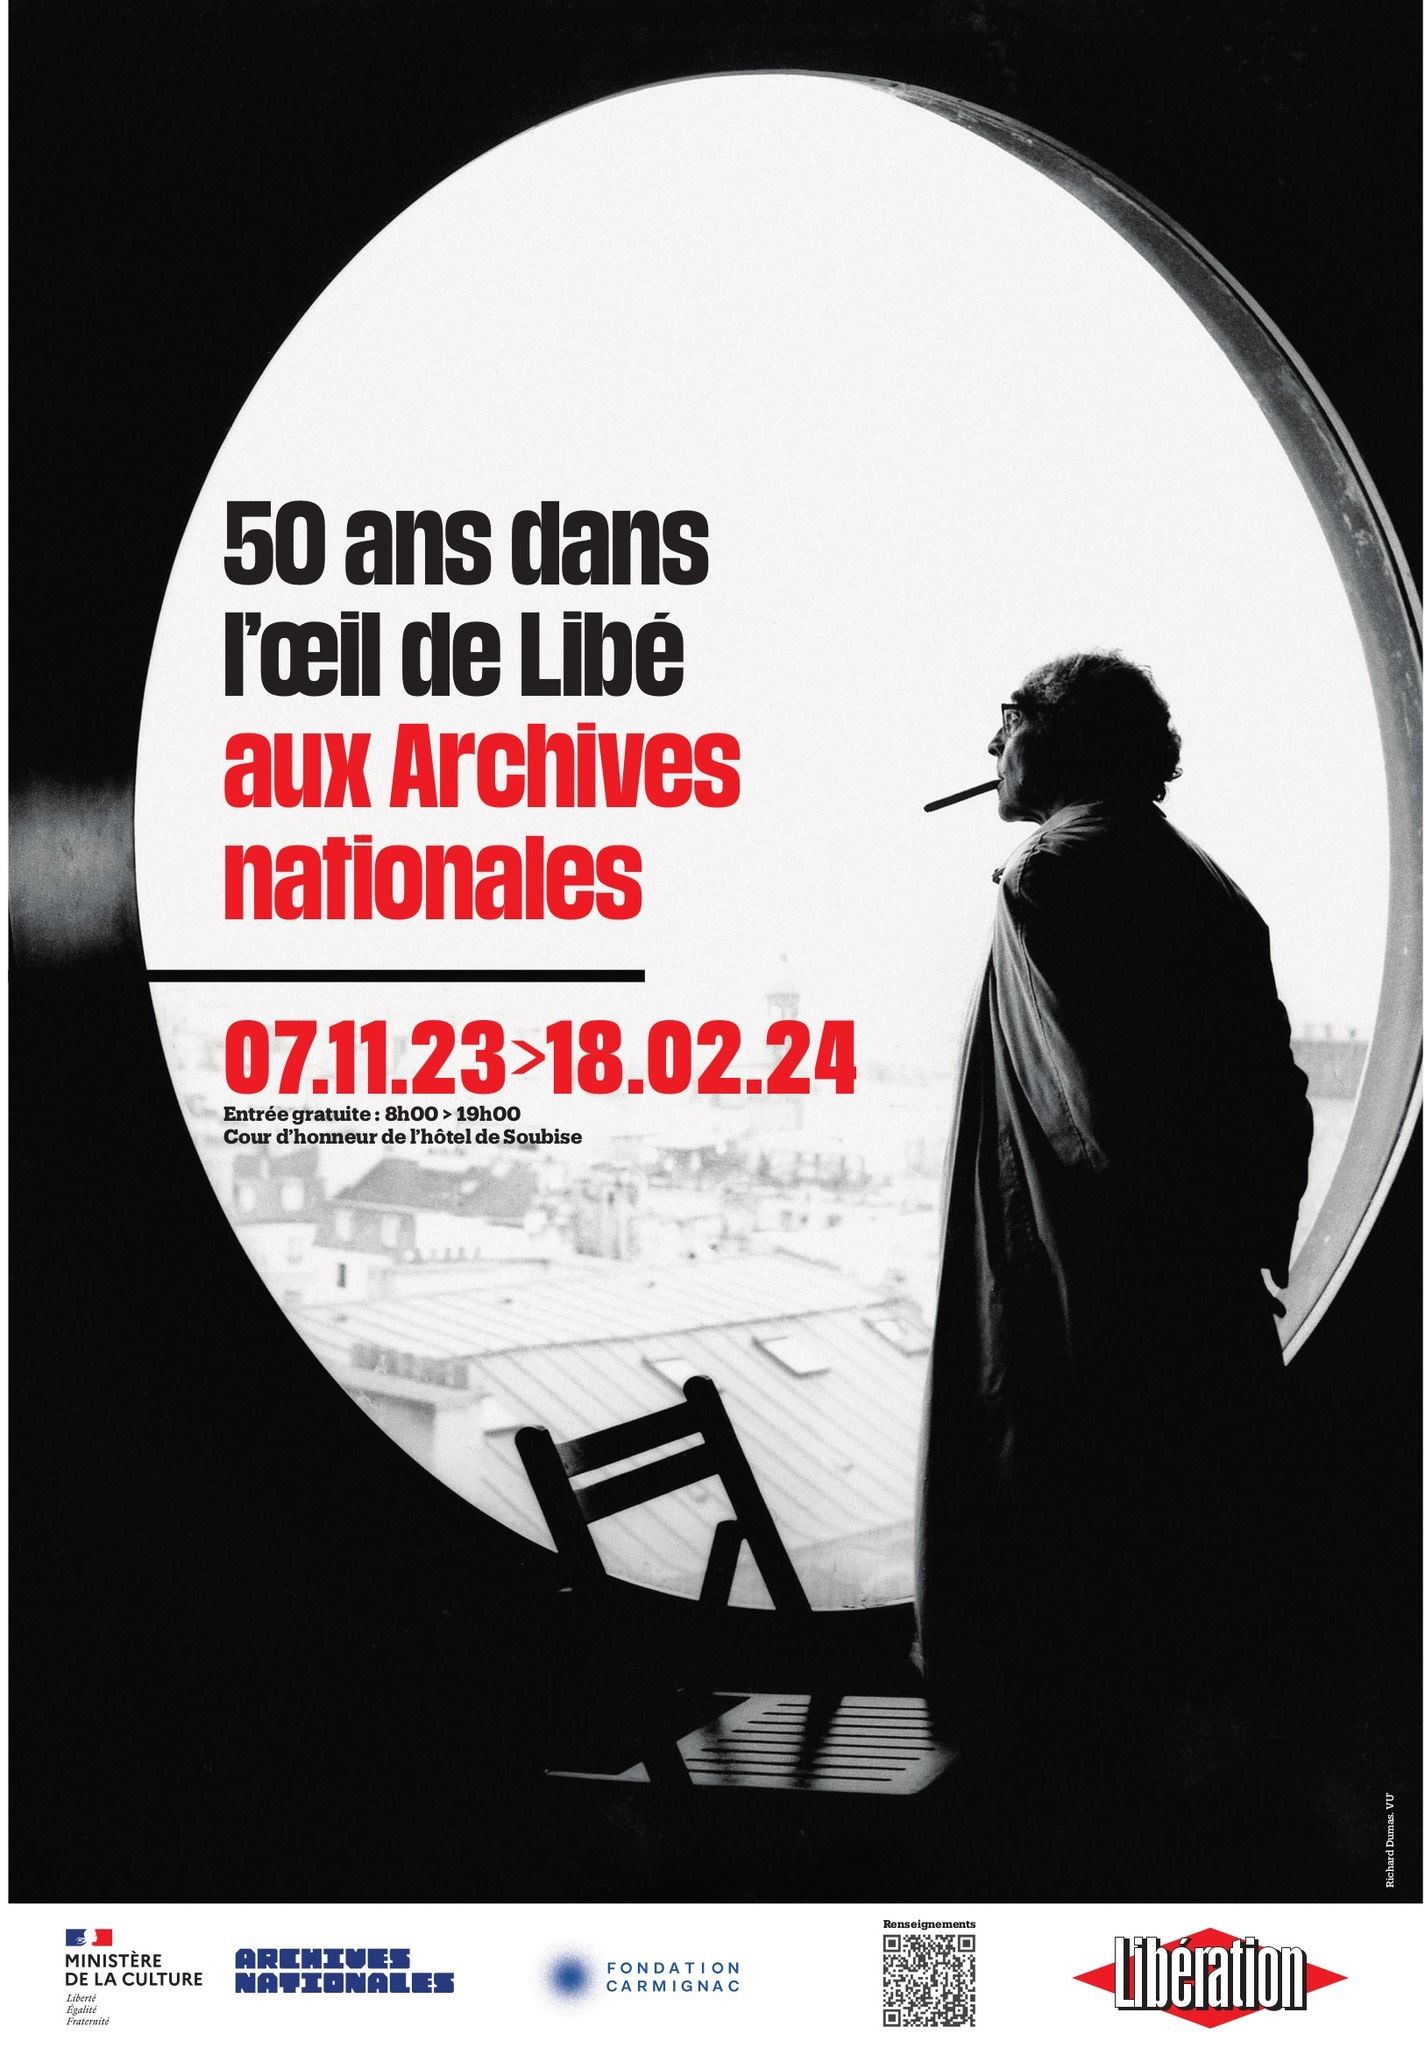 Octobre 1998, Paris. Godard dans l'œil de Libé. © Richard Dumas. VU'